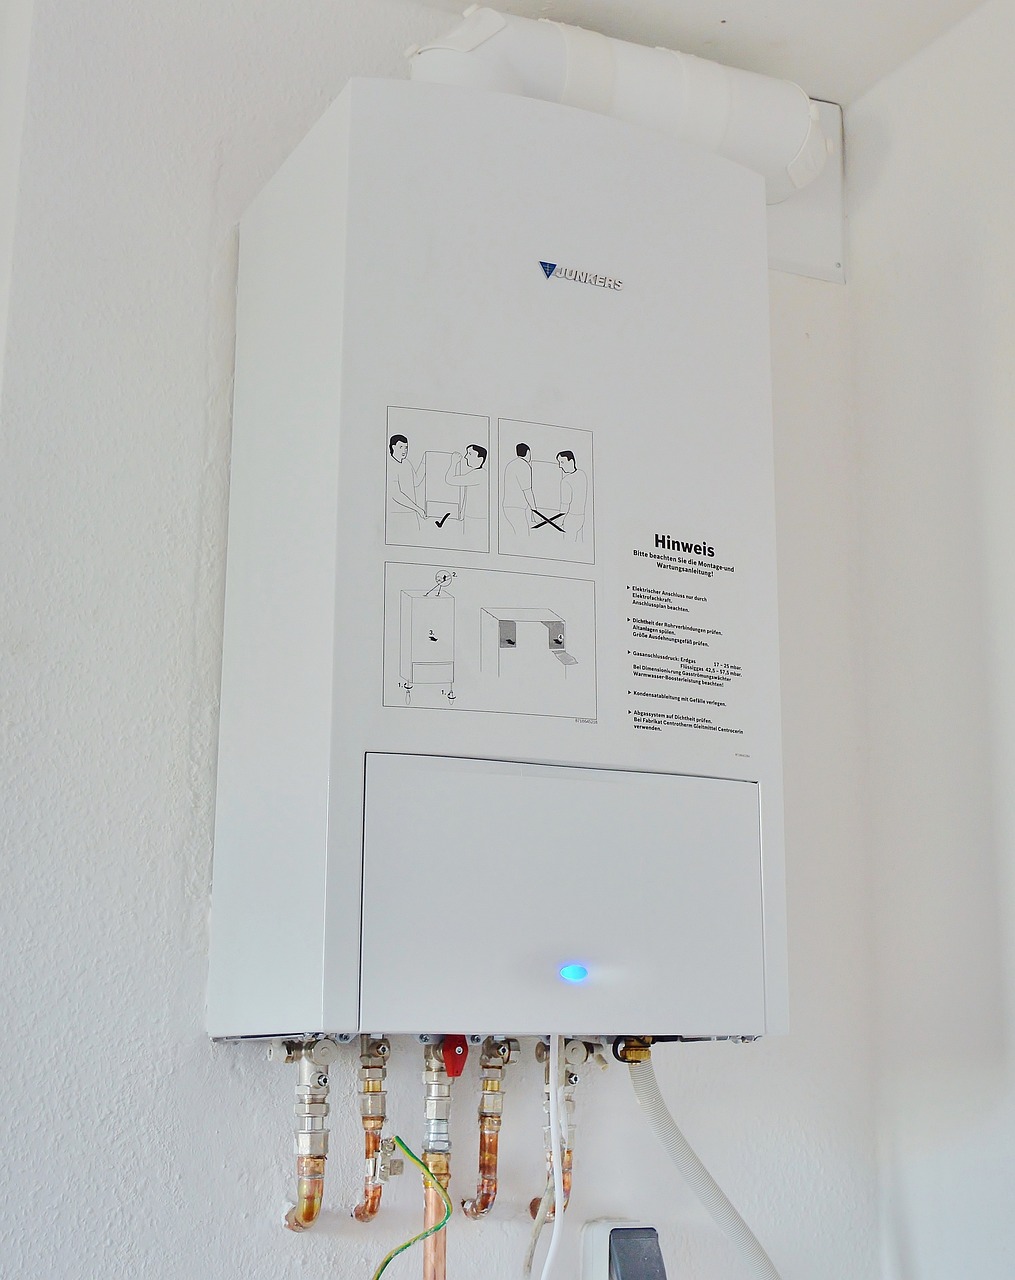 電熱水器如果使用人數和容量不相符，會使電熱水器重複加熱，反而更耗電。（圖片來源：Pixabay）